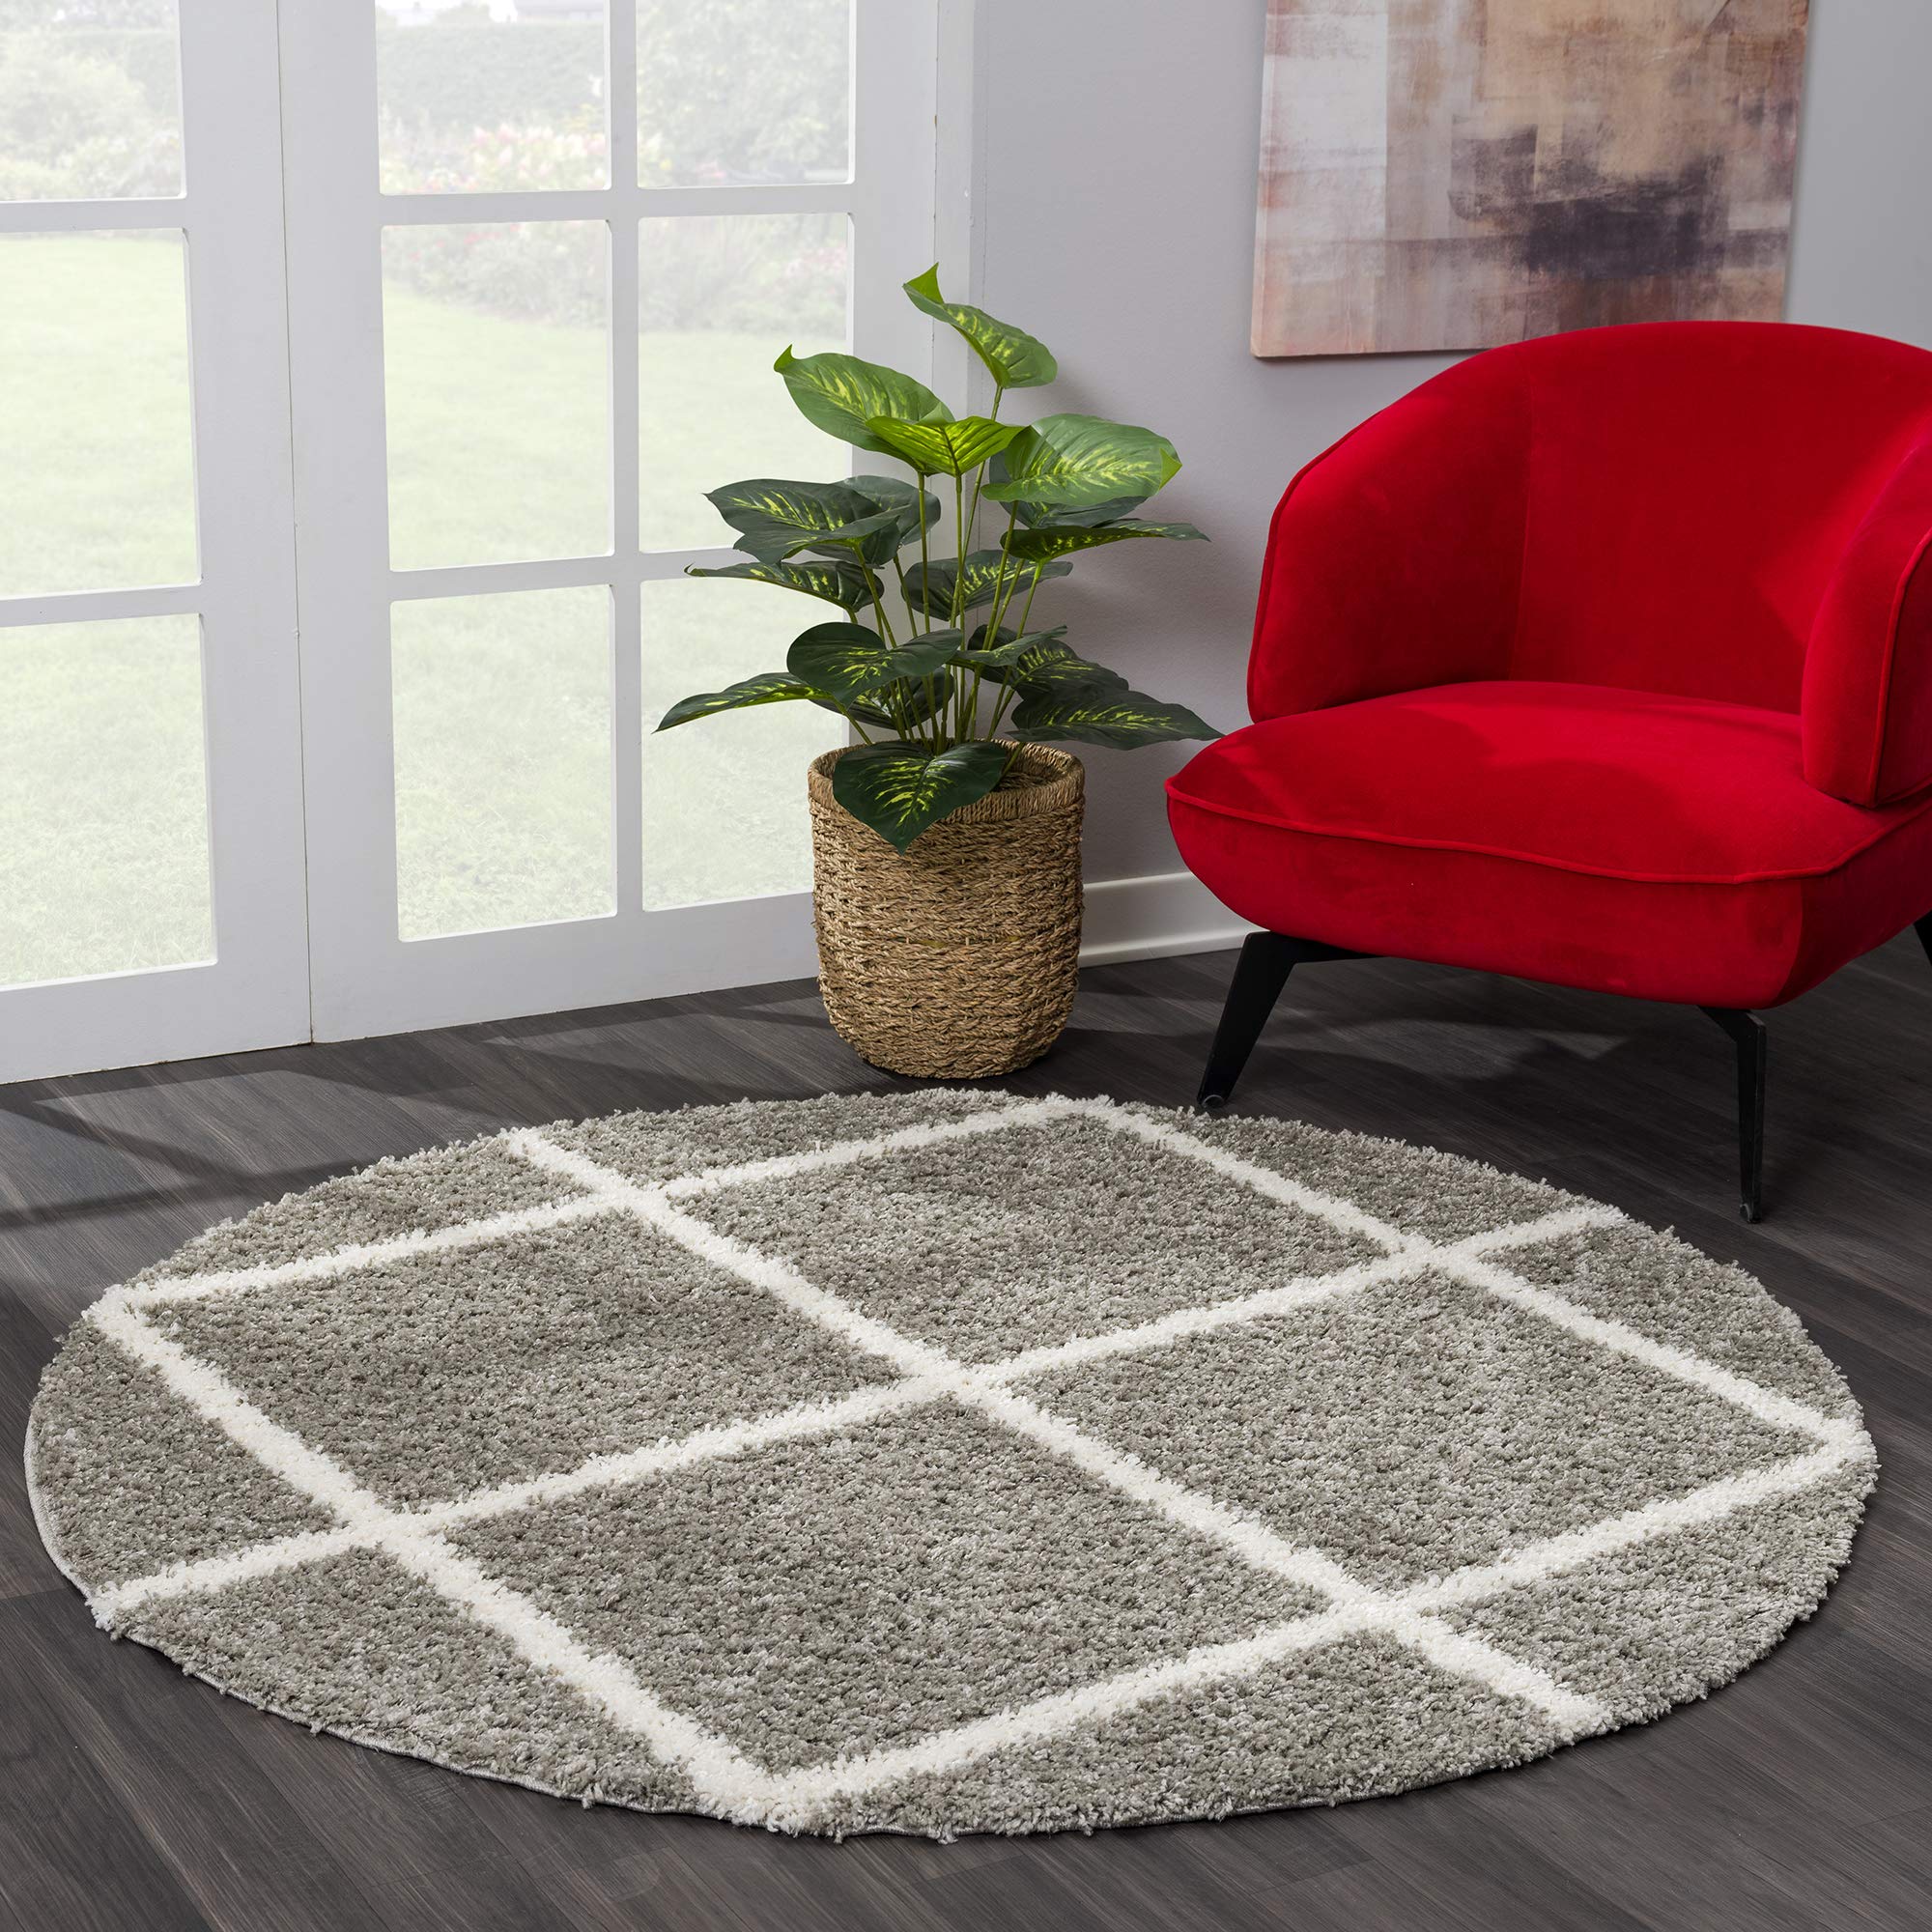 SANAT Madrid Shaggy Teppich Rund - Hochflor Teppiche für Wohnzimmer, Schlafzimmer, Küche - Grau, Größe: 200 cm